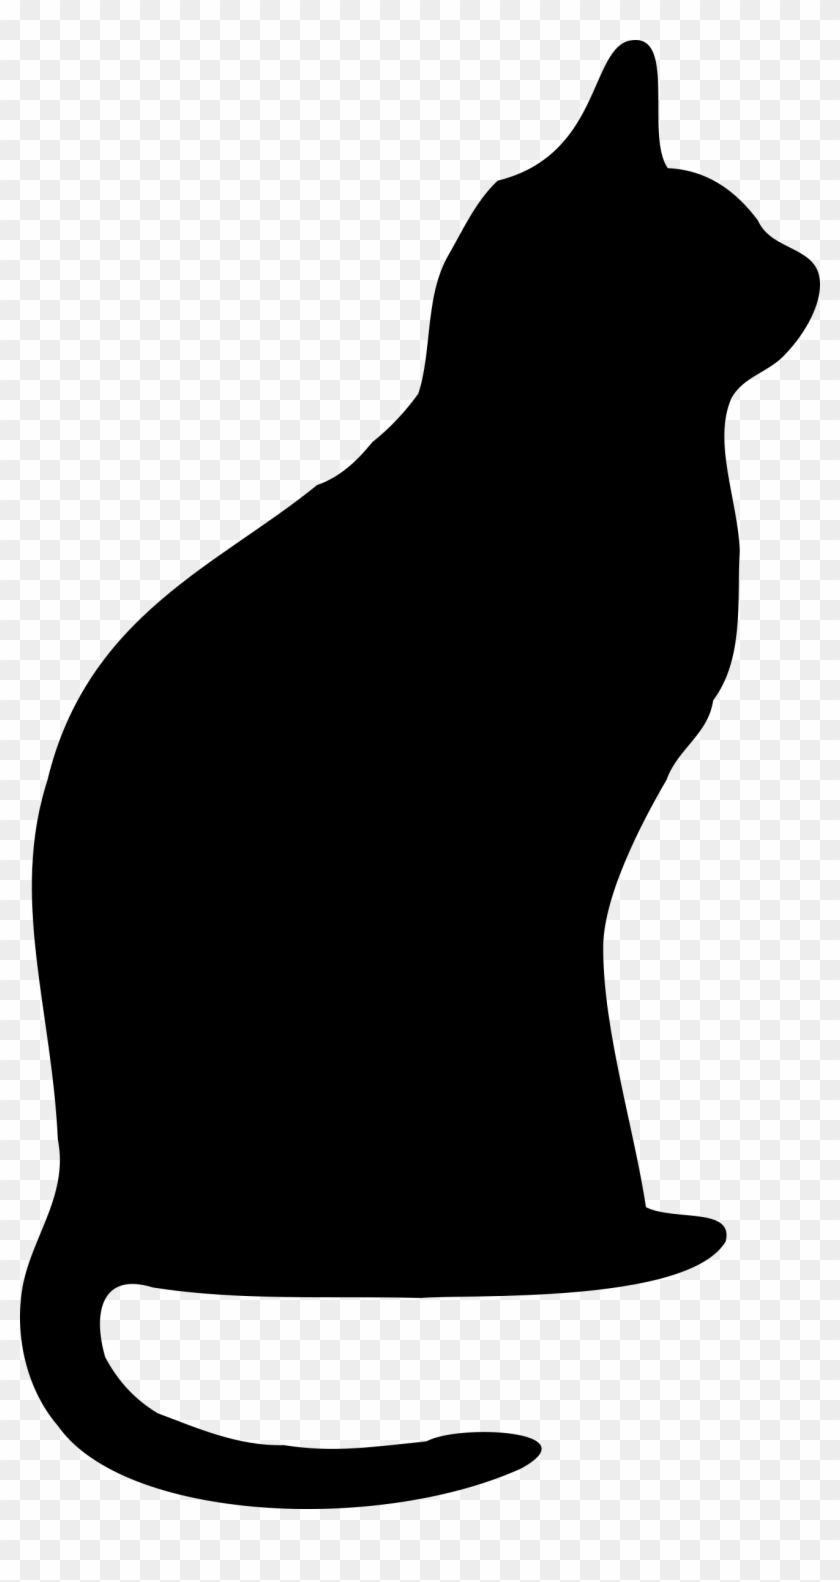 Cat Clip Art - Cat Silhouette Clip Art #28310